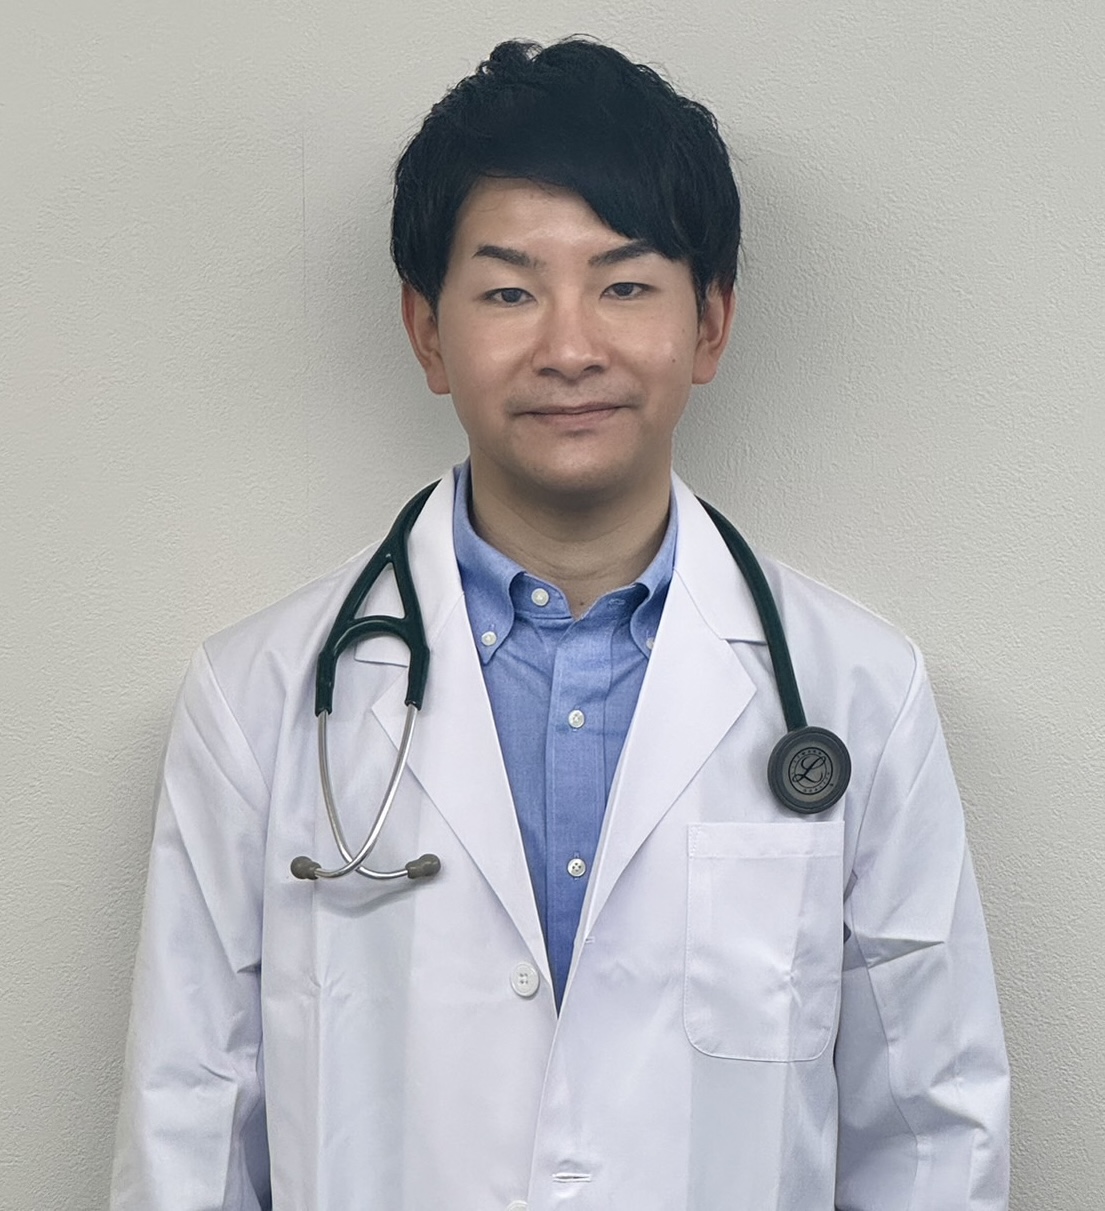 Dr. Saito